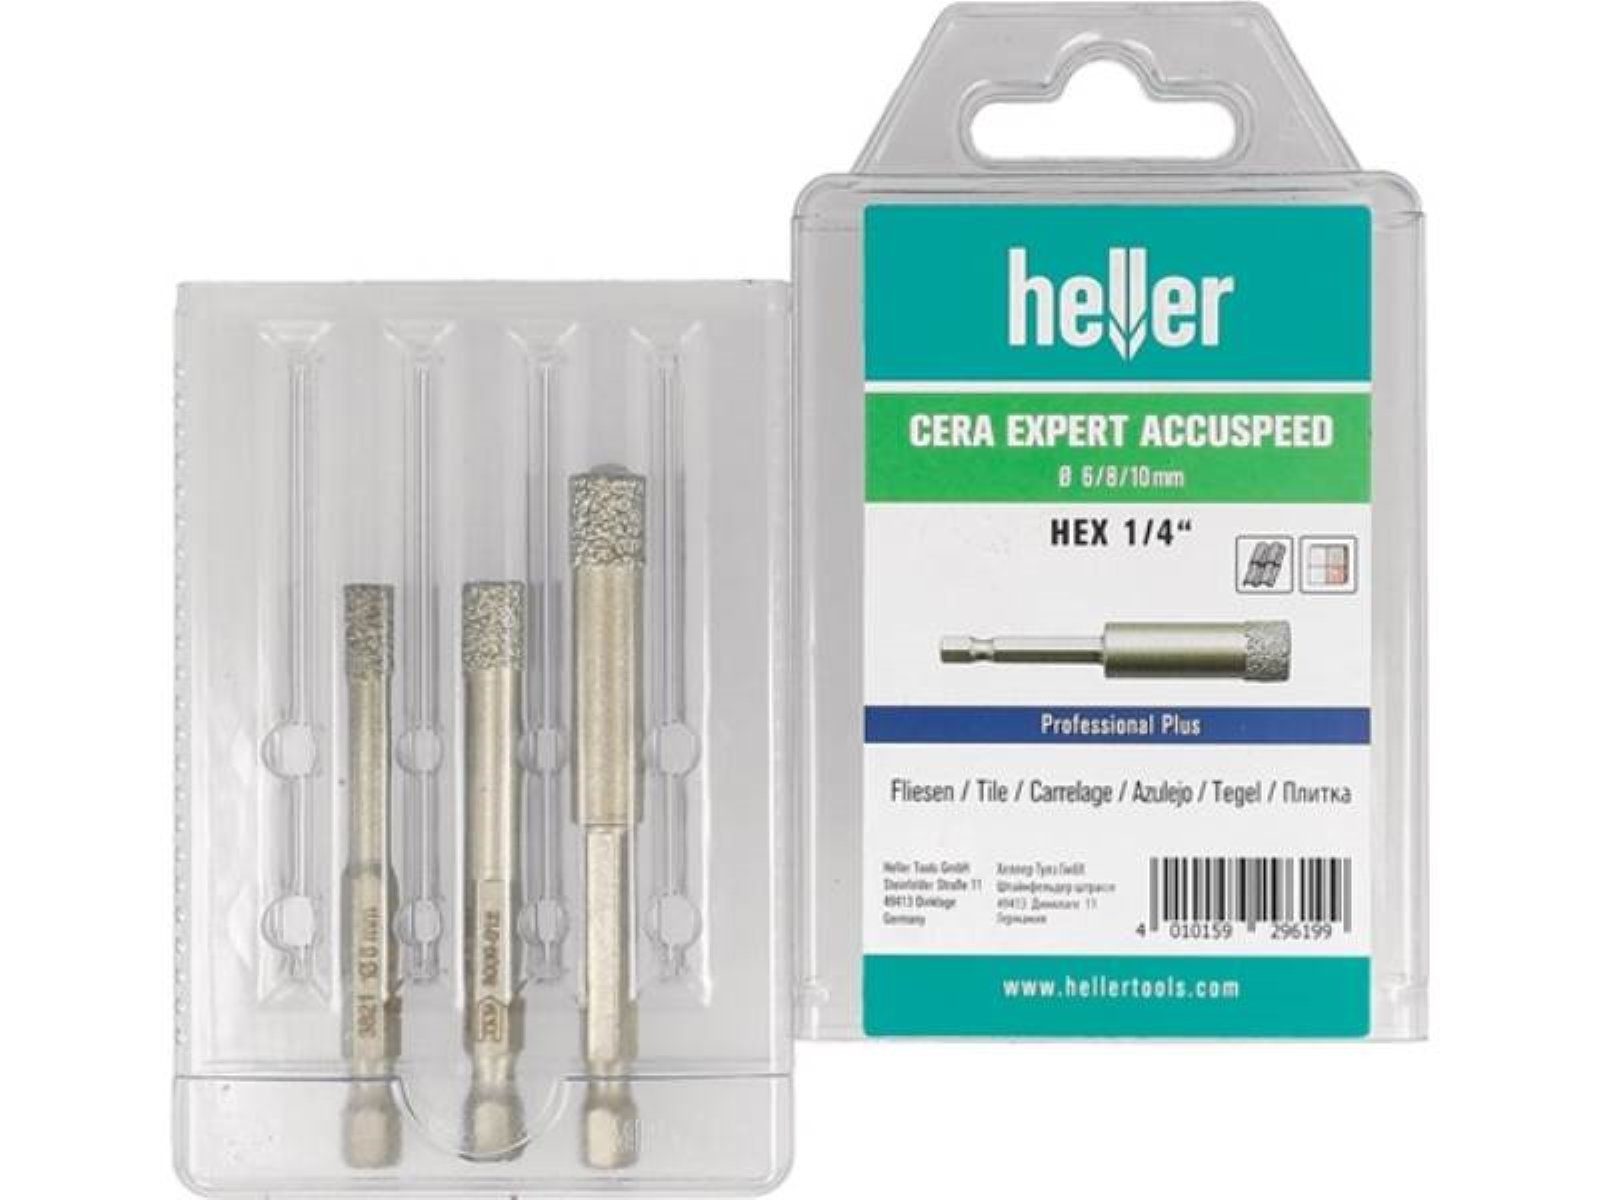 Heller Bohrersatz Feinsteinzeugbohrer Cera Expert Accuspeed 3-tlg.D.6,8,10mm Schaft 6-ka